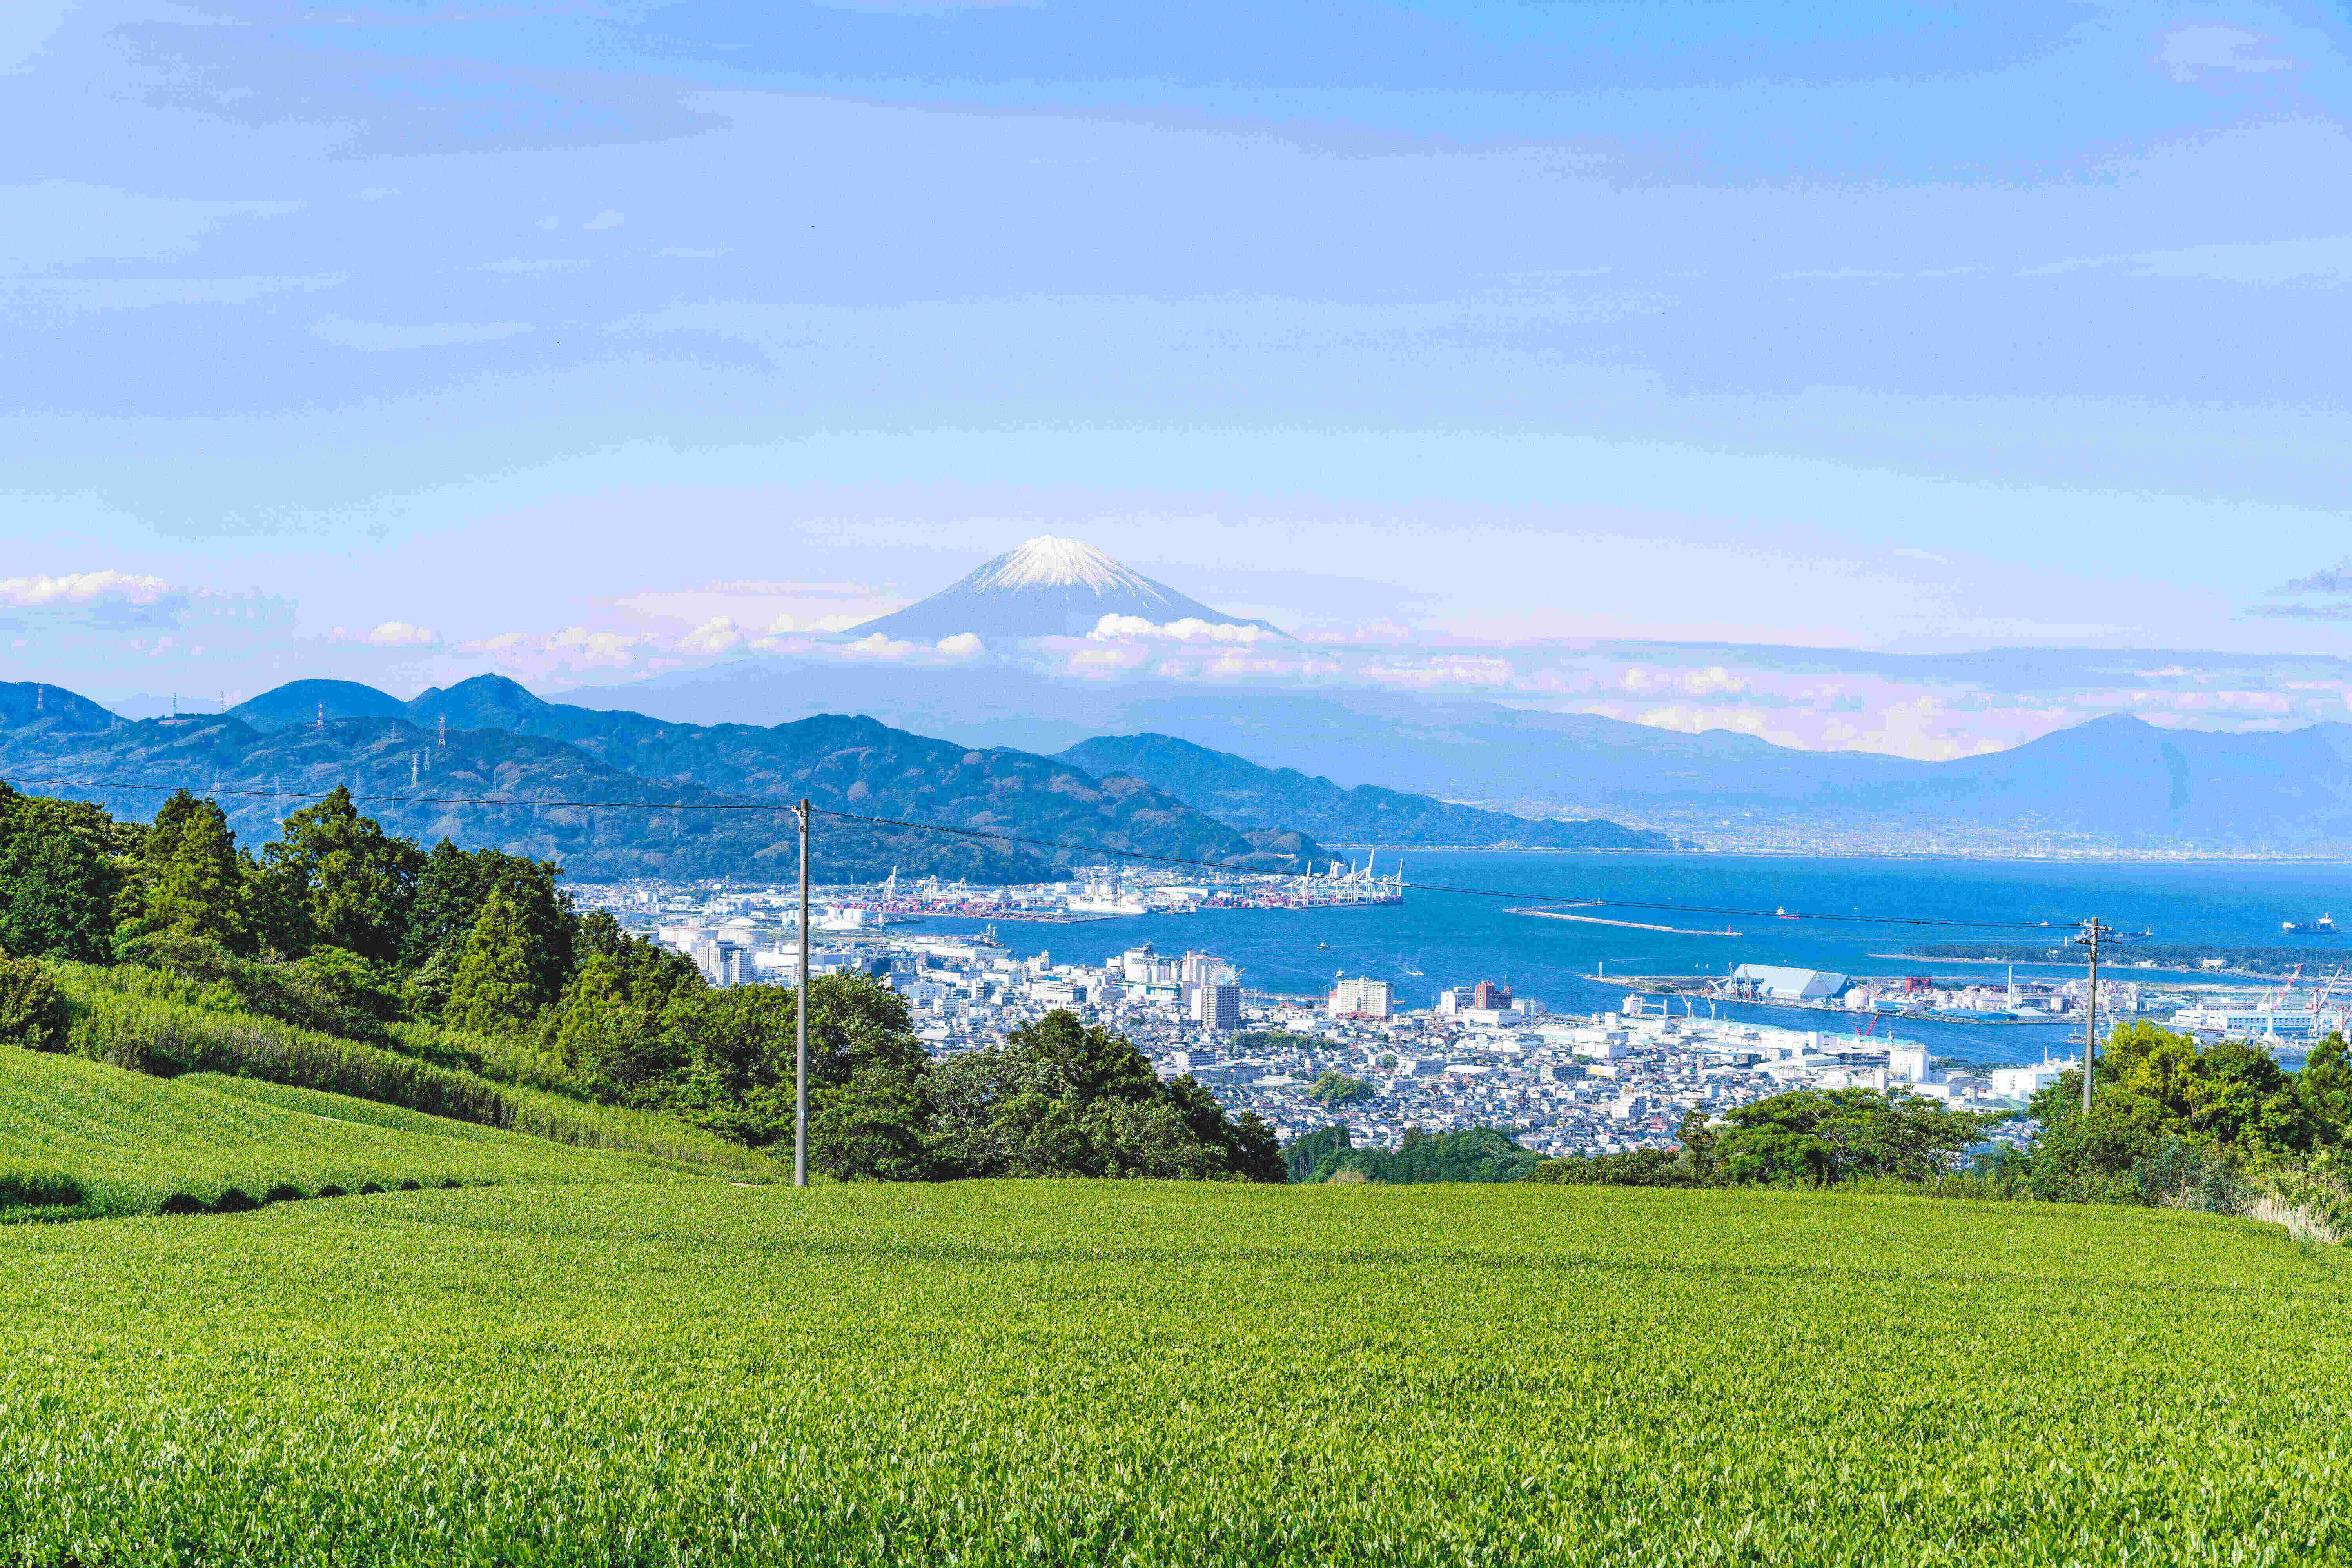 富士山と駿河湾、遠く伊豆半島を一望できるパノラマビューです